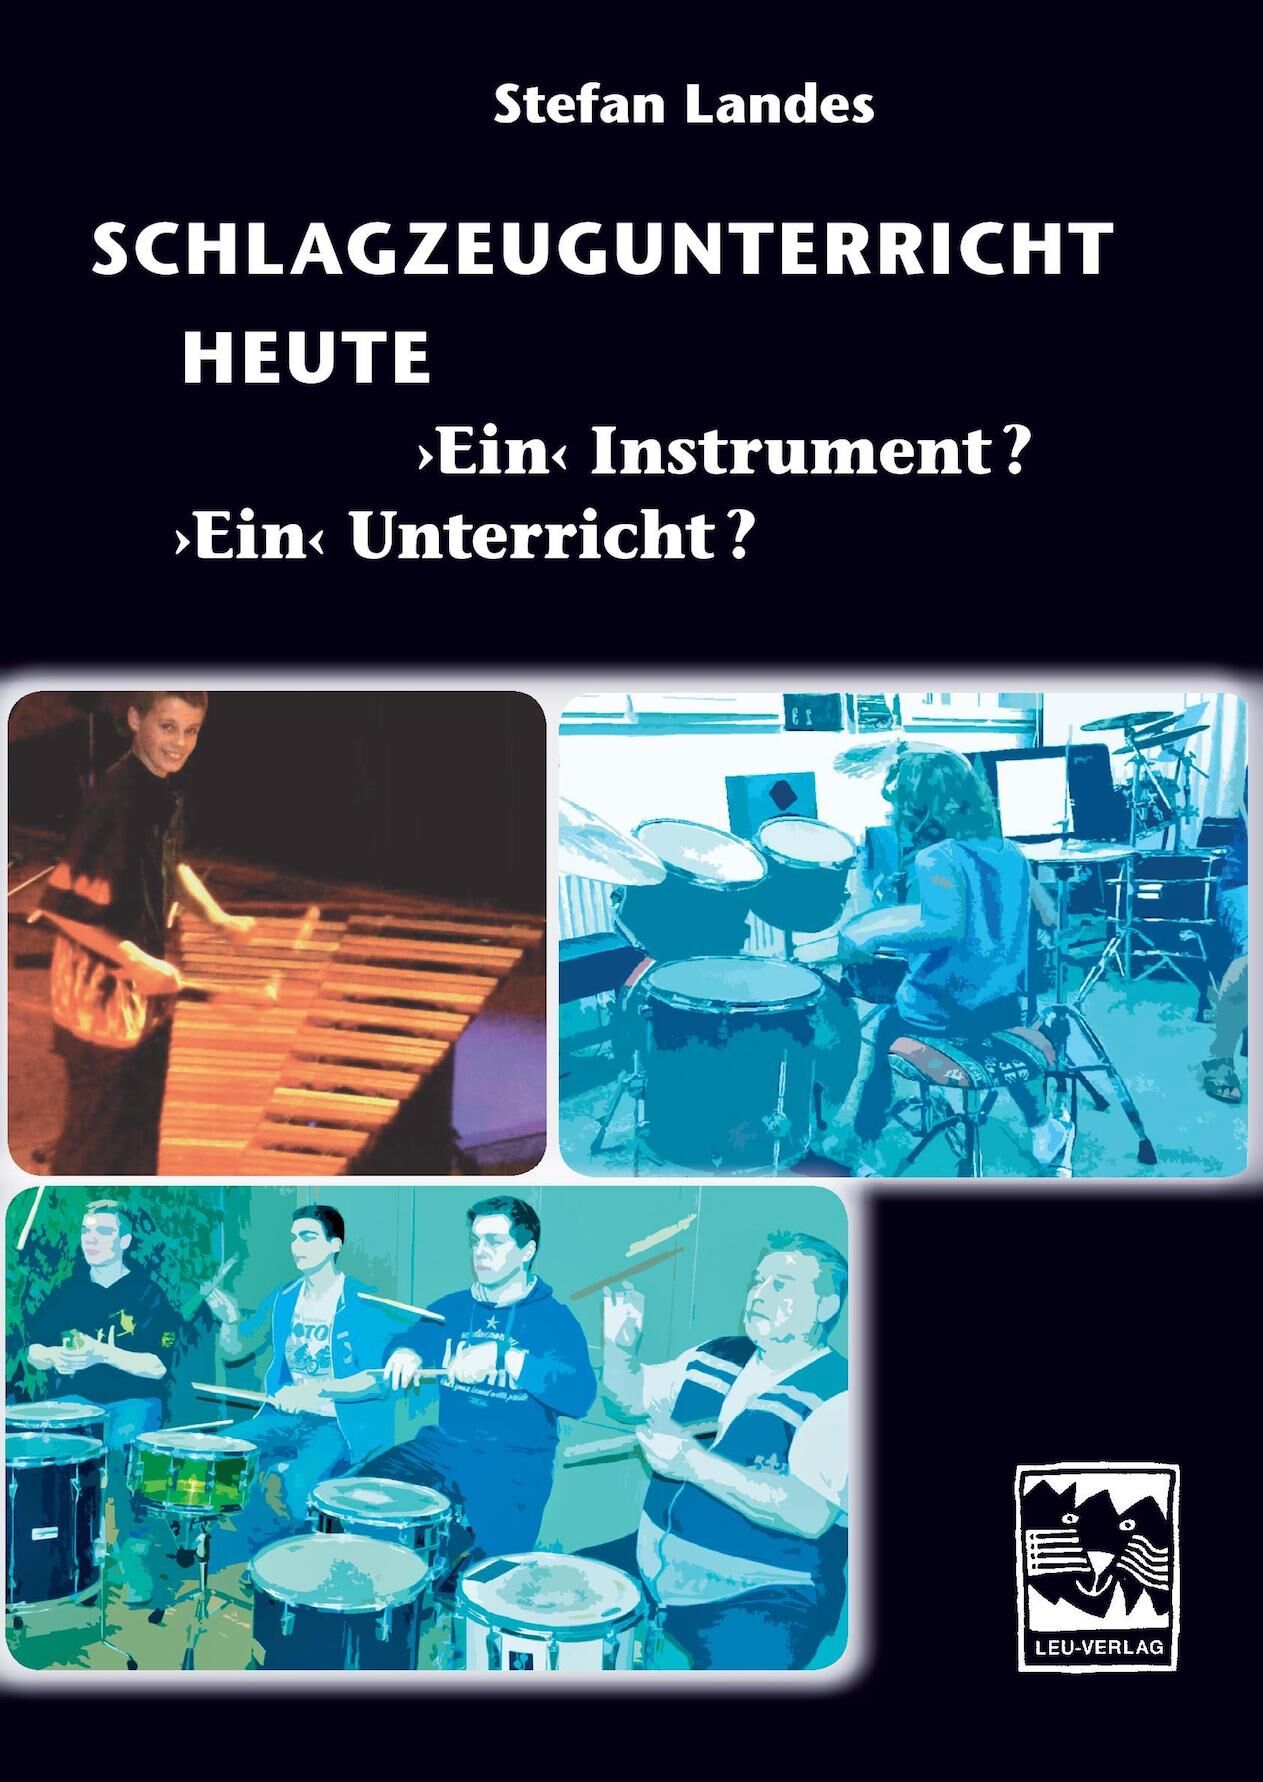 Das Cover des Buches “Schlagzeugunterricht heute - Ein Instrument? Ein Unterricht?”. Mehrere Bilder auf dem Buchtitel zeigen einen jungen Marimbaspieler, einen Schlagzeugschüler und eine Trommelgruppe mit Lehrer.